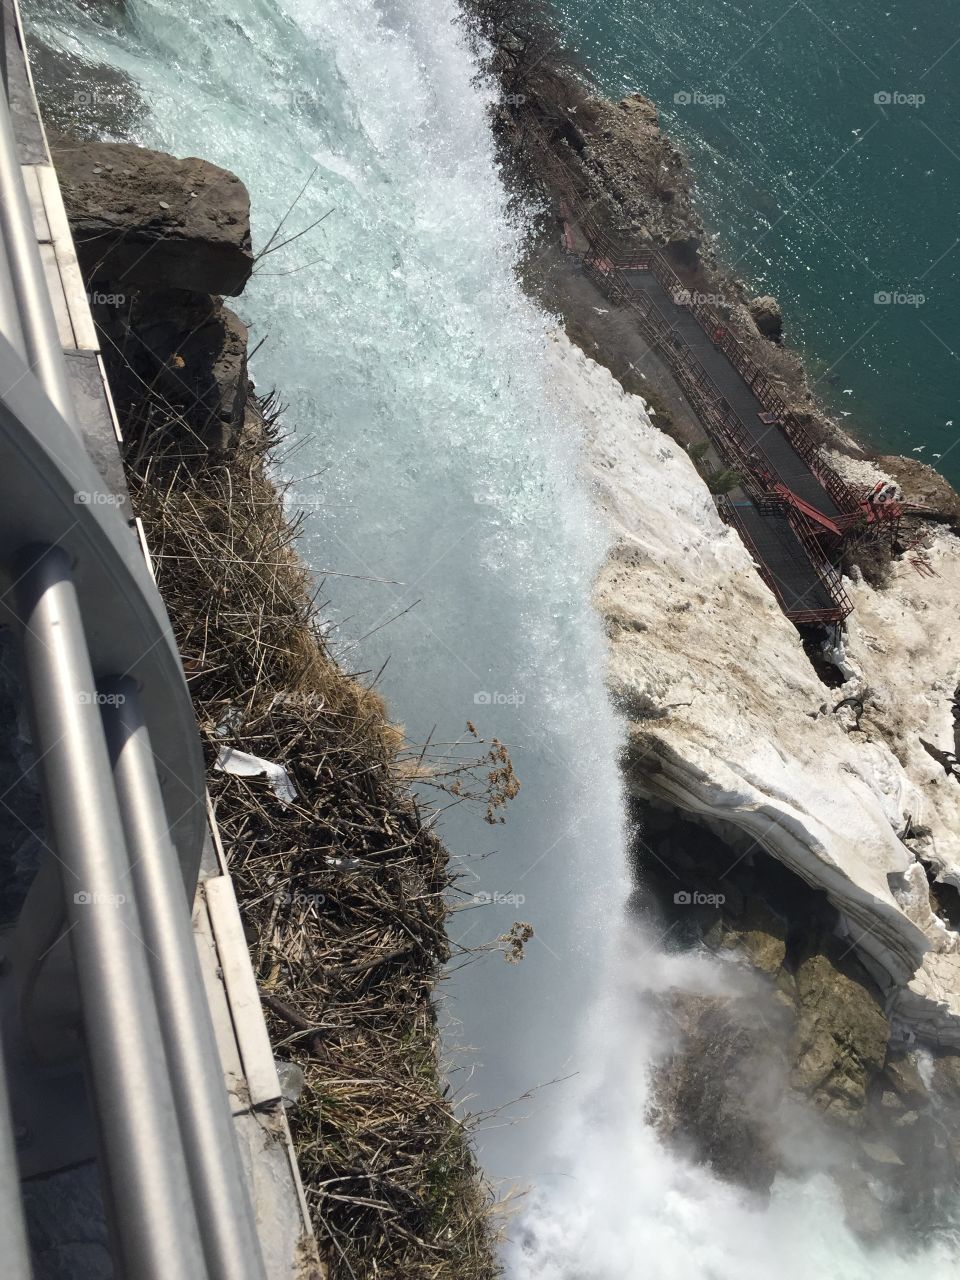 The Falls. Niagara Falls 4/29/15